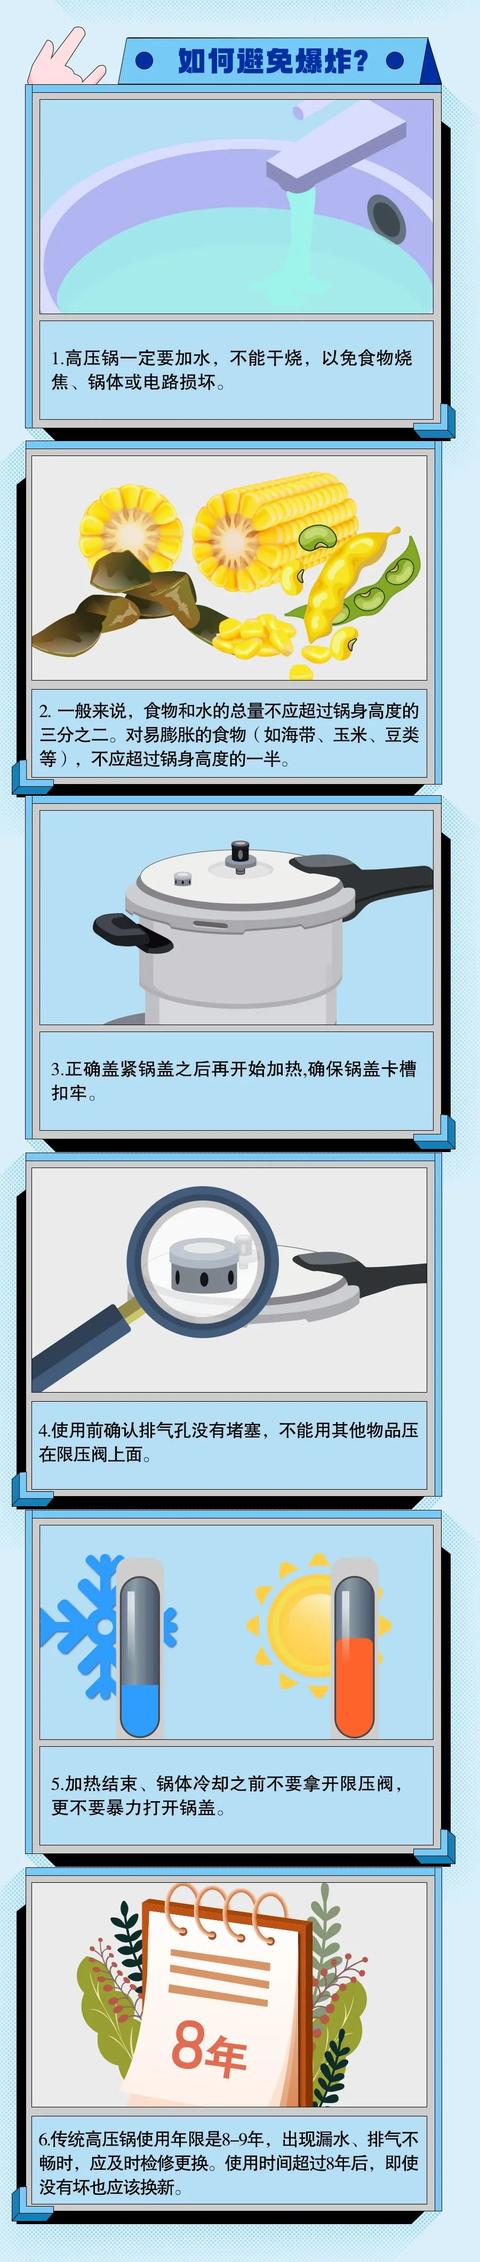 高压锅怎么使用视频,使用高压锅的方法视频(4)